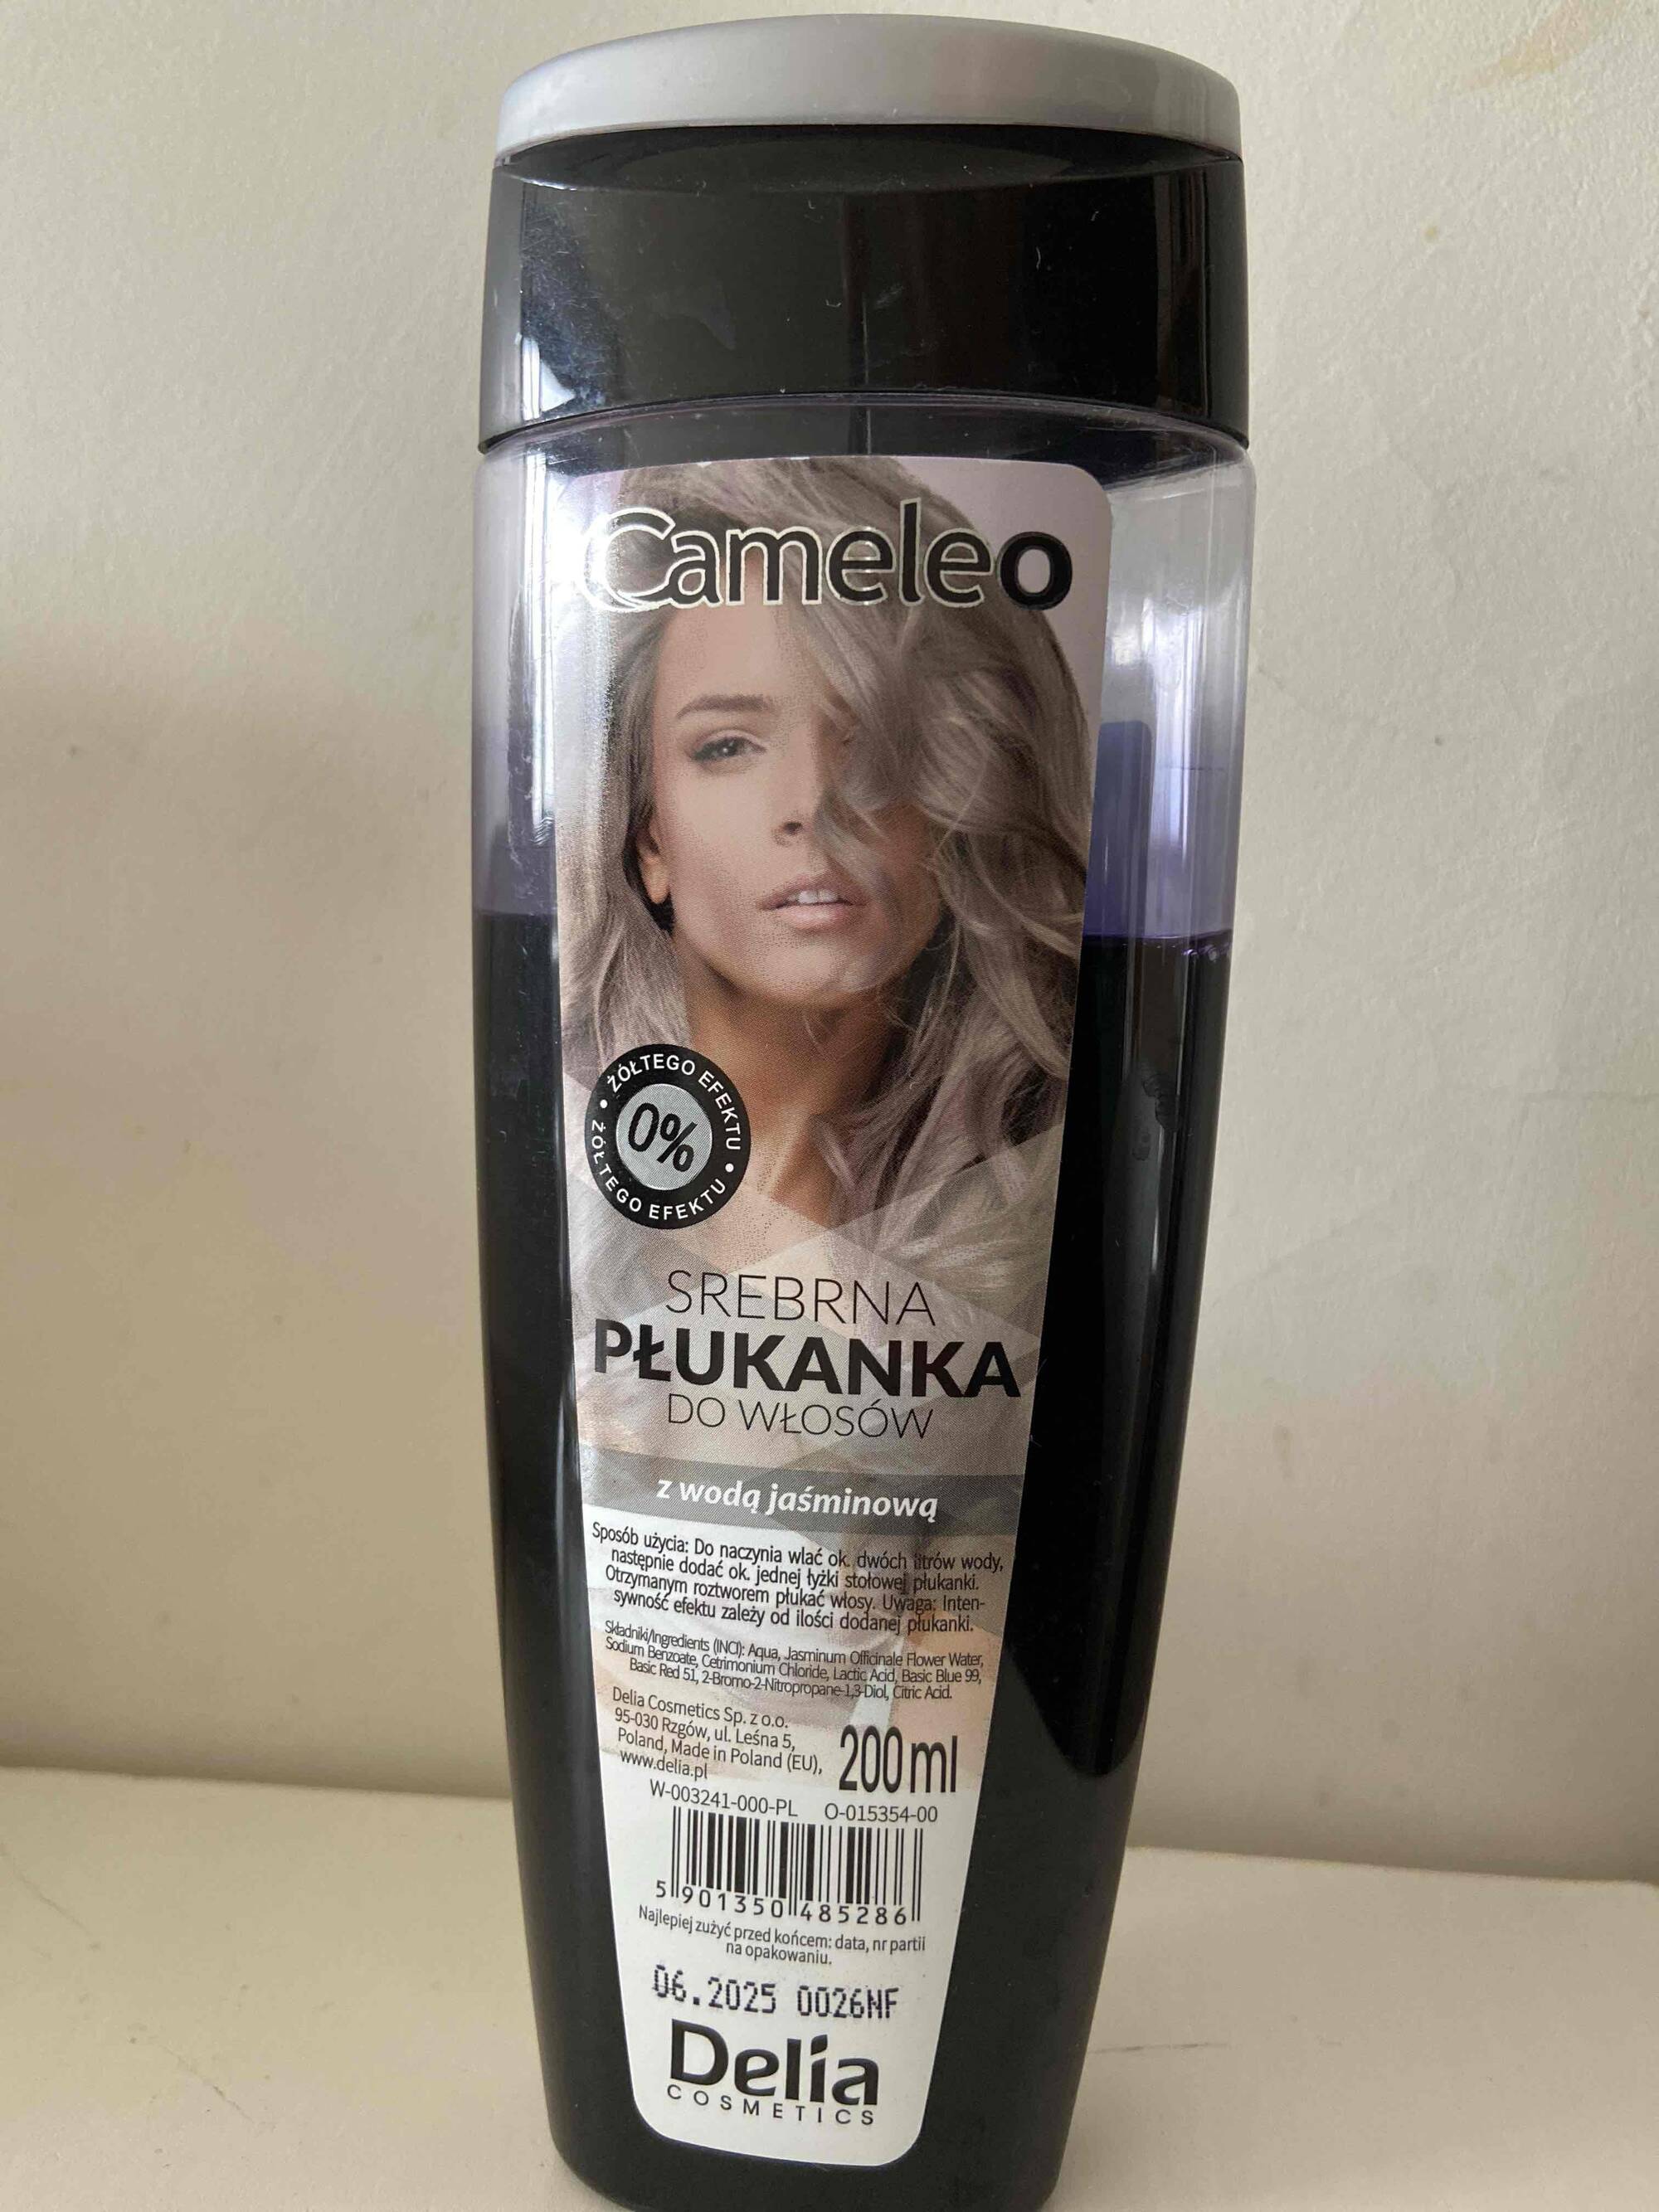 DELIA COSMETICS - Cameleo - Płukanka do włosów z wodą jaśminową